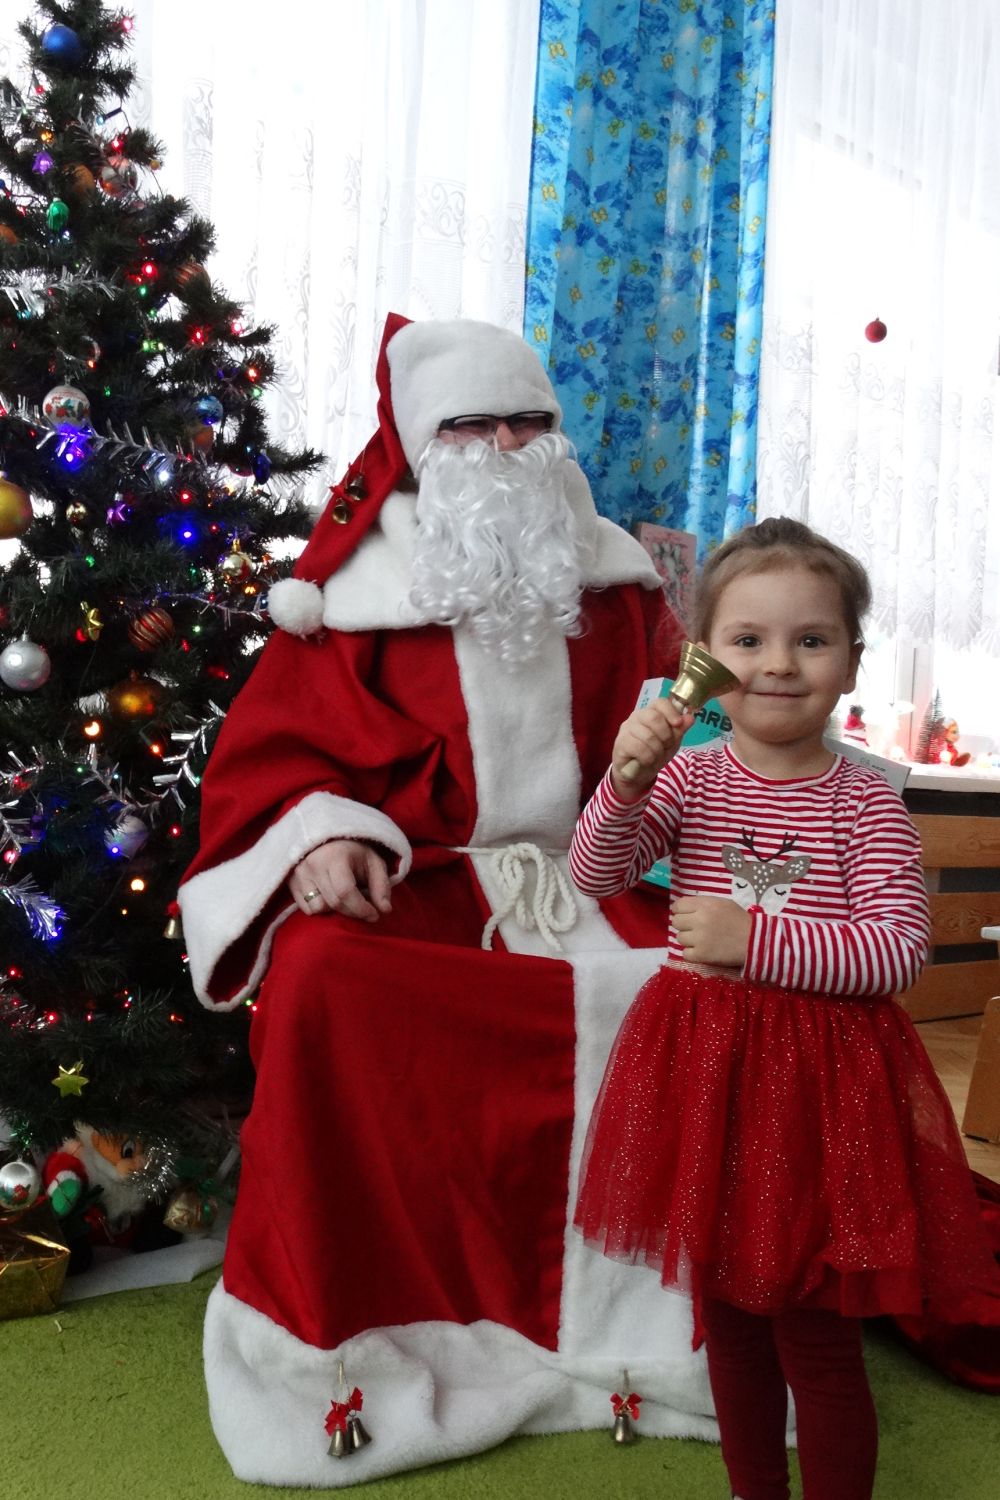 Dziewczynka z grupy 2 stoi przed Mikołajem i trzyma w ręce dzwonek św. Mikołaja. Mikołaj siedzi na krześle obok choinki